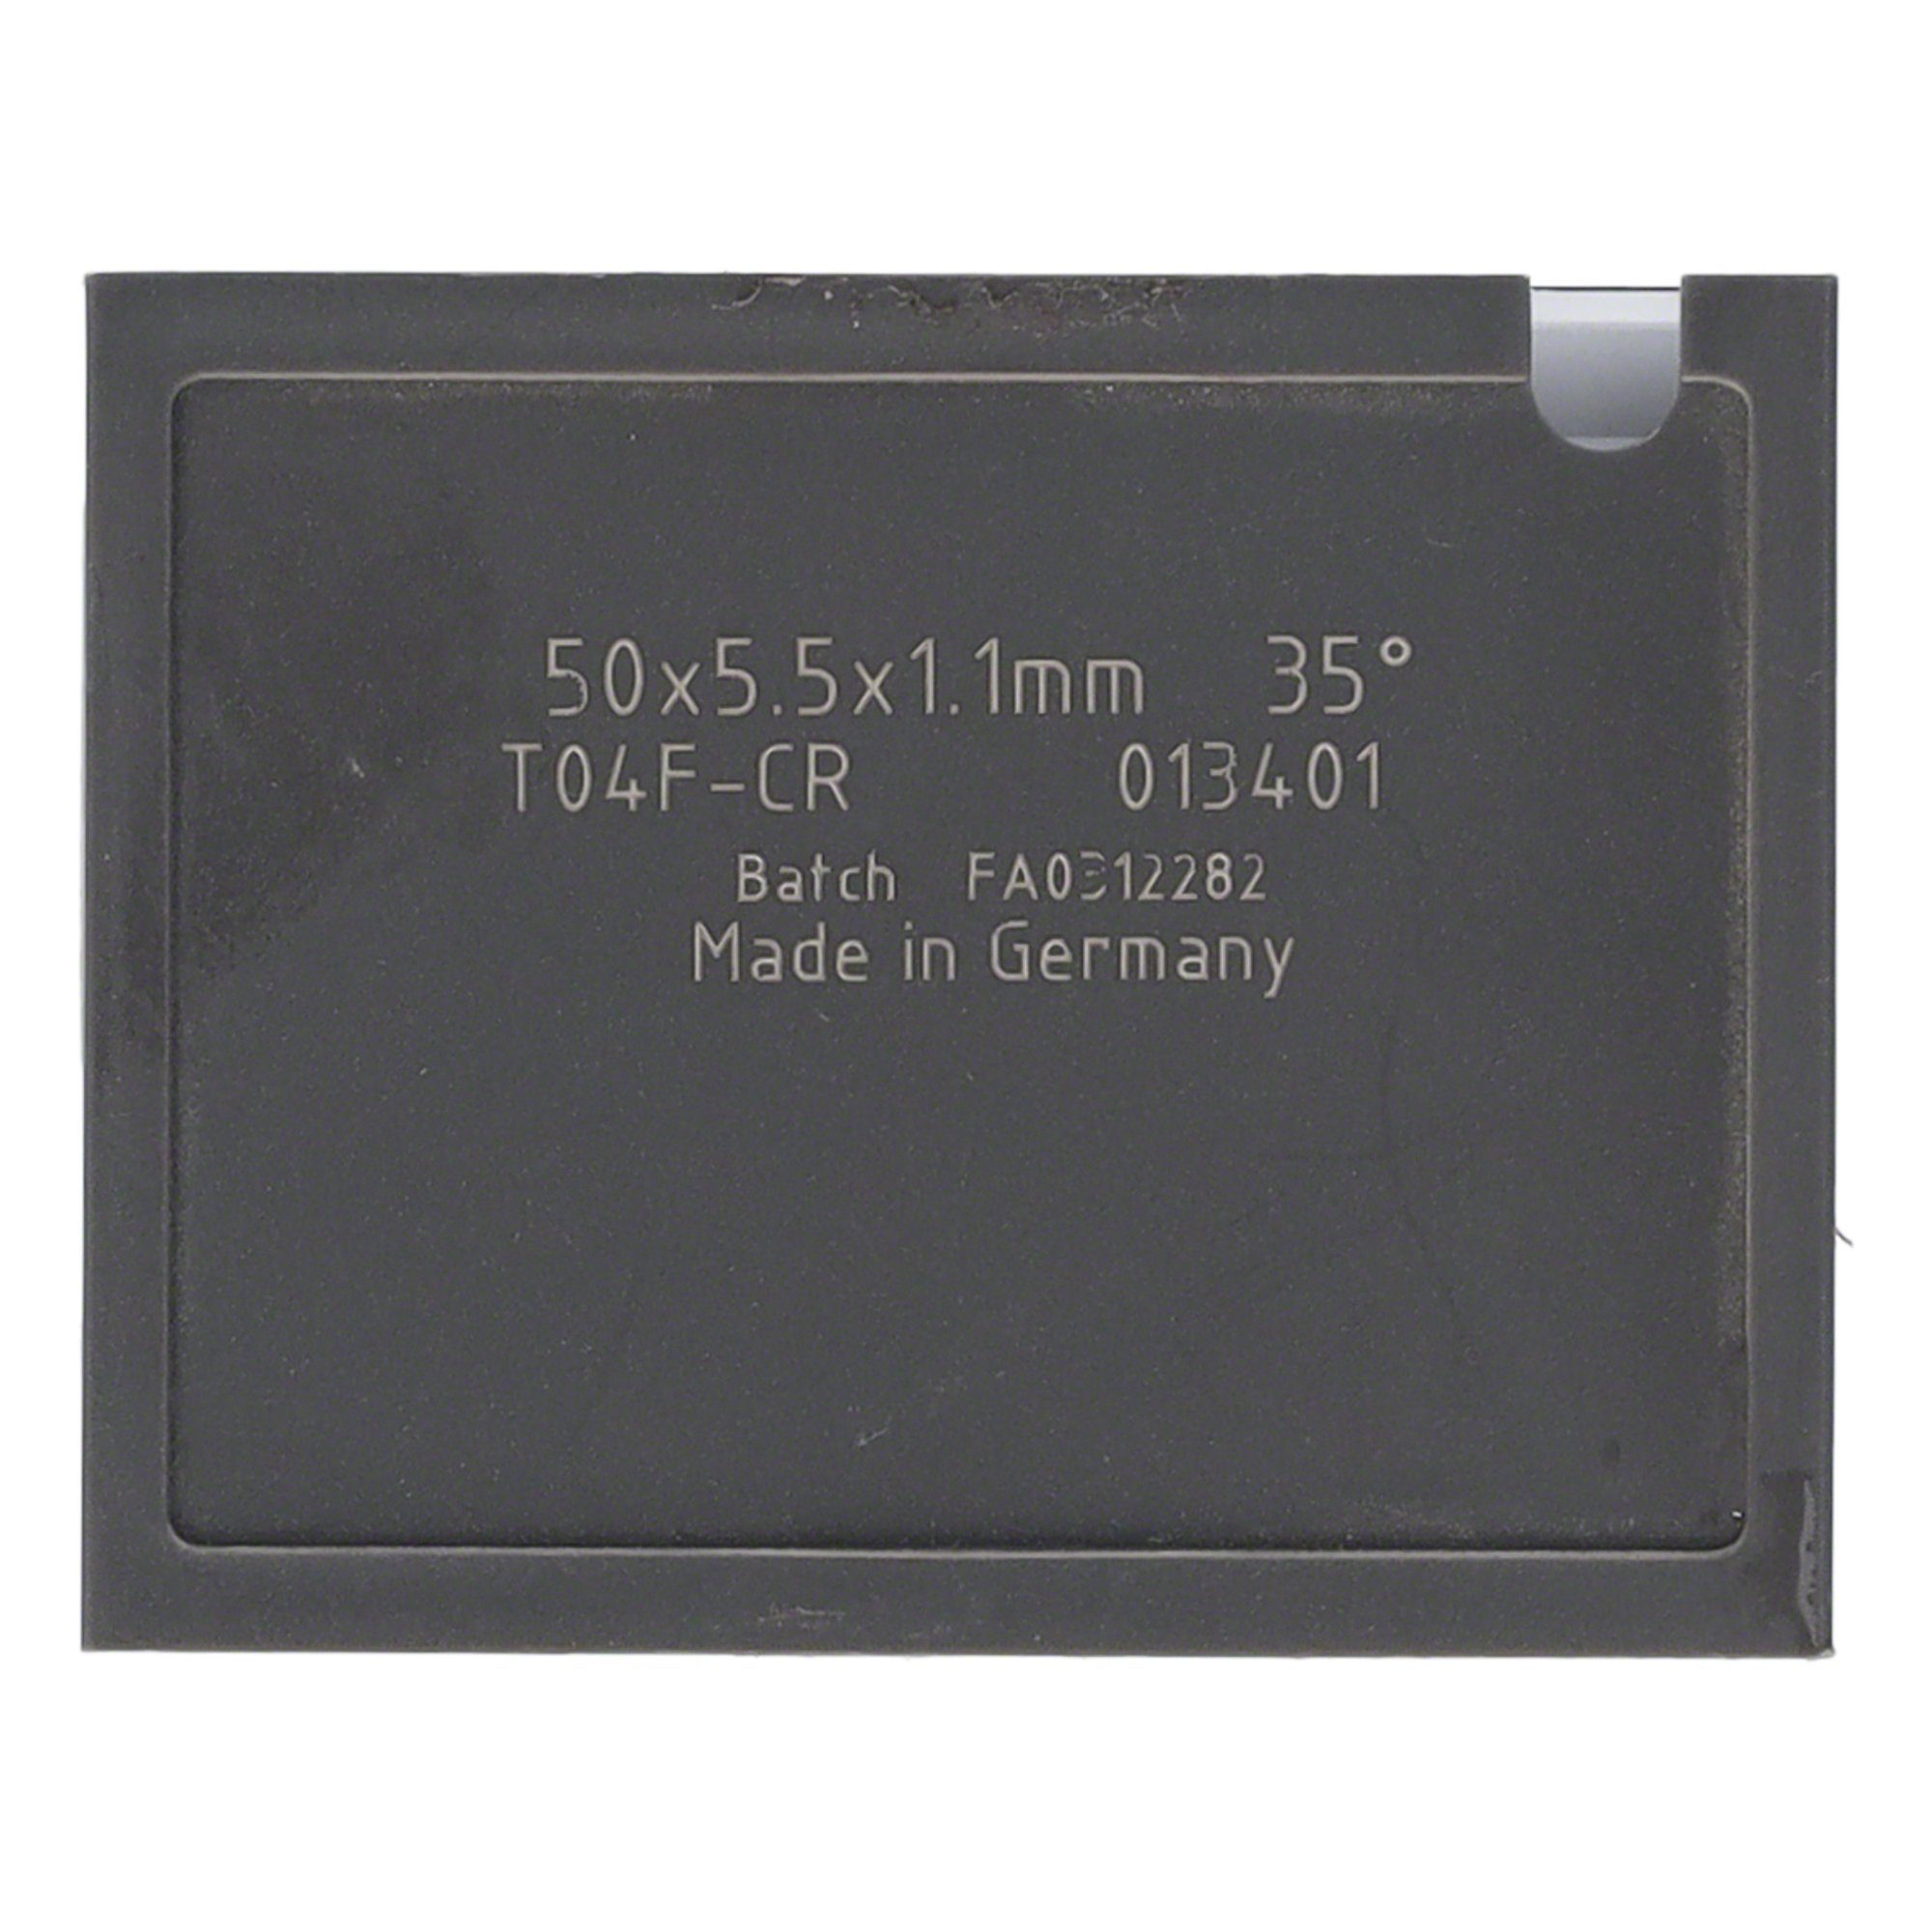 30x5,5x1,1mm T04F Wendeplattenfräser 38 Quernut Tigra 10 St. Mini-Wendeplatte und - Brust